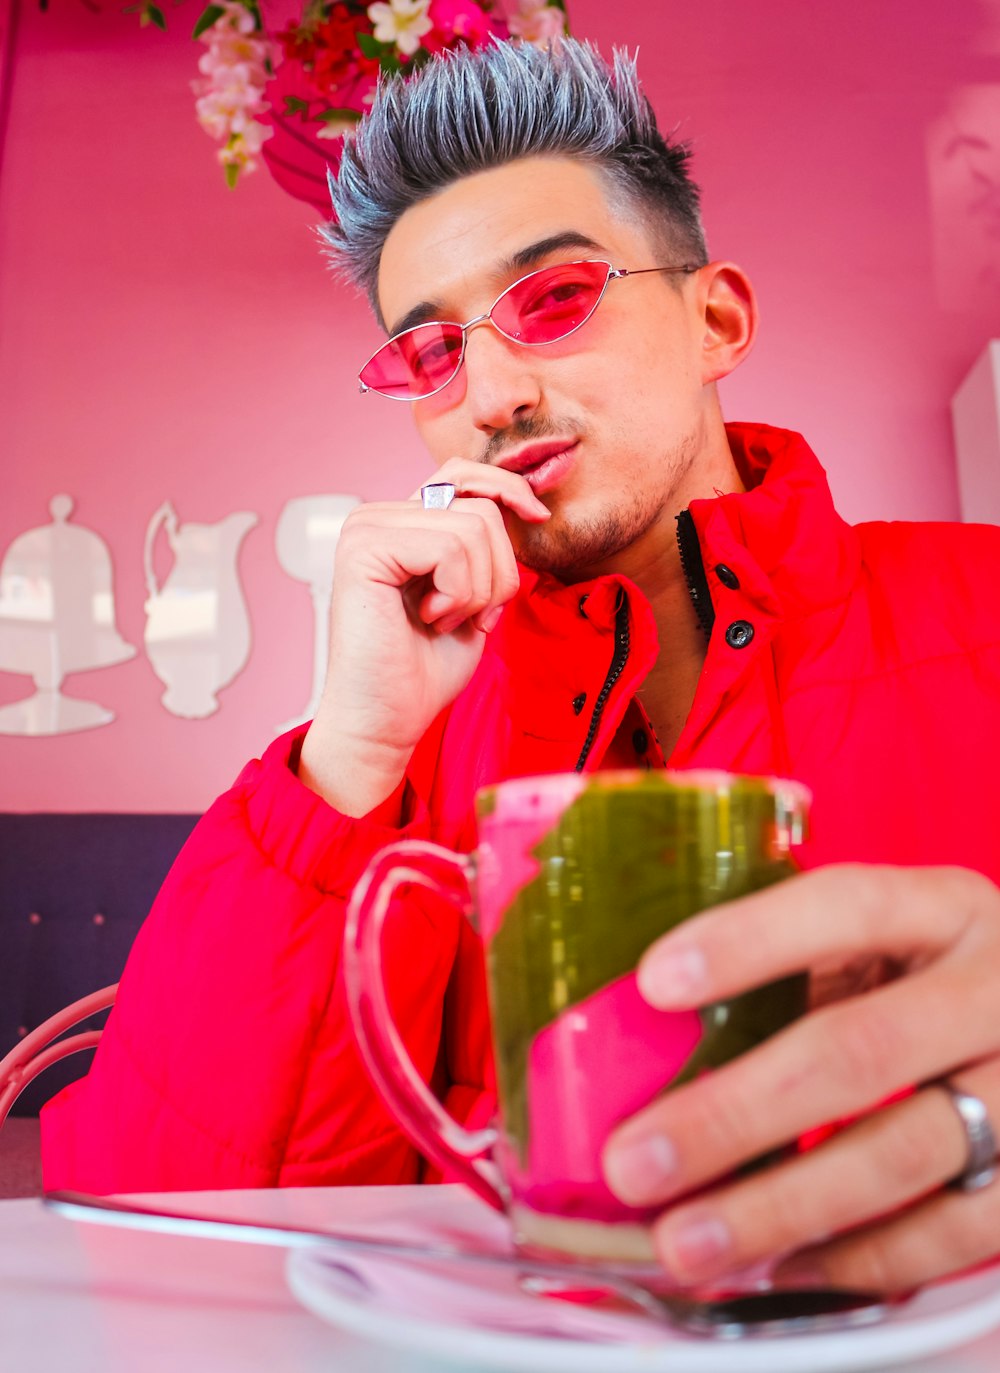 緑のガラスのマグカップから飲む赤いジャケットの男